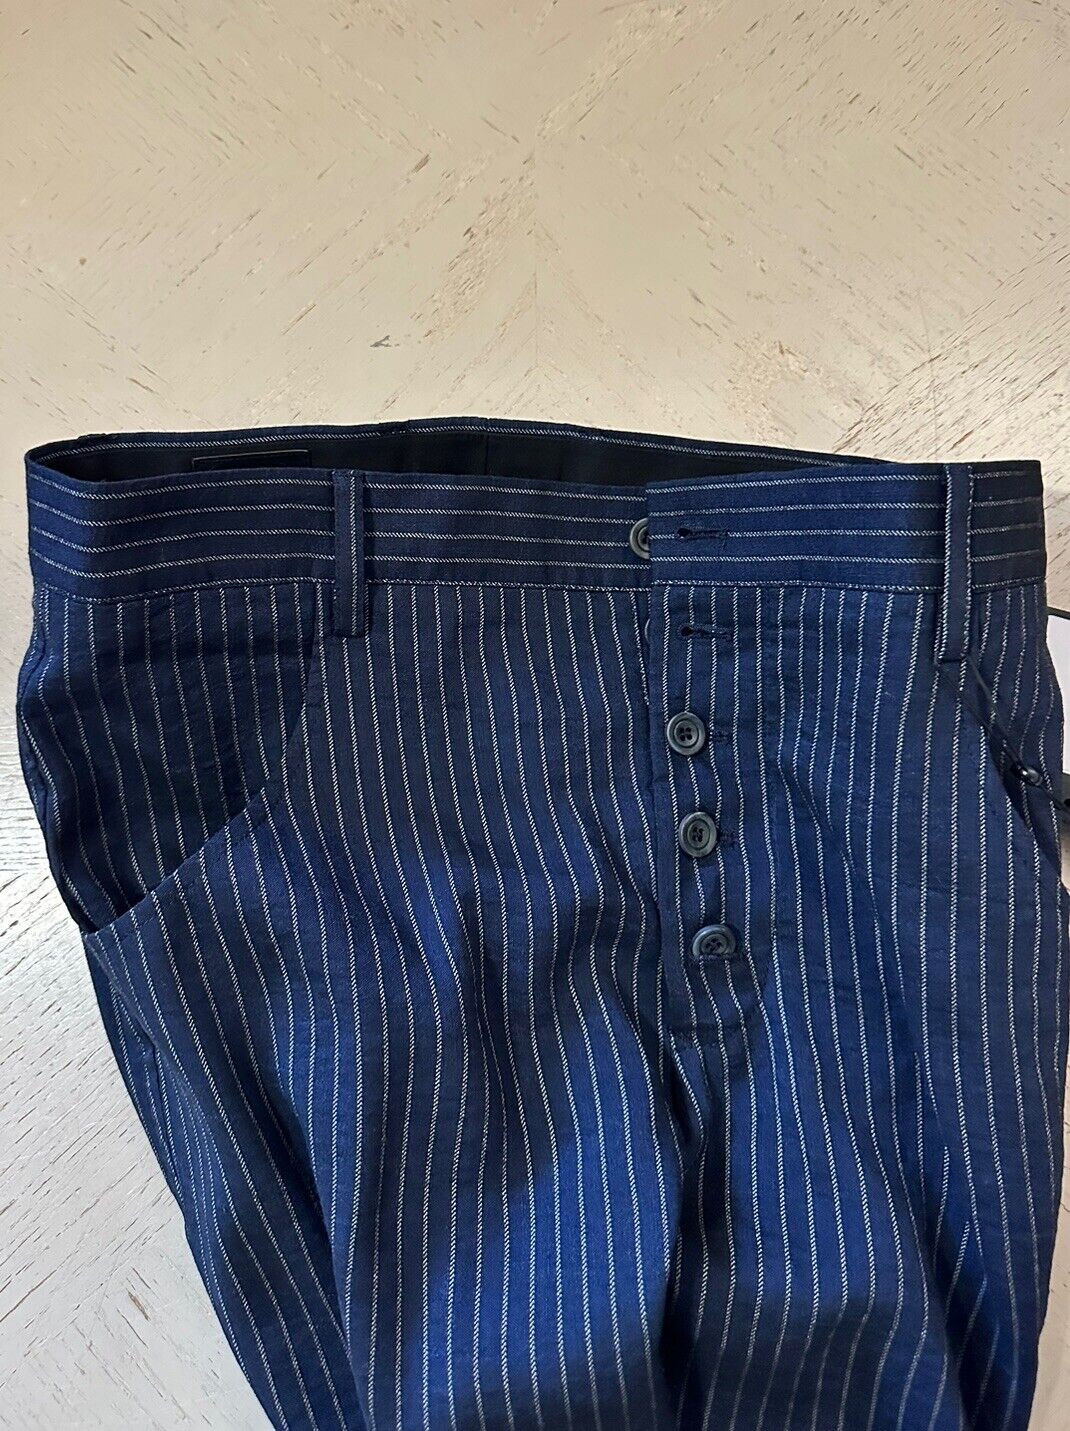 NWT $1195 Giorgio Armani Mens Pants Striped Blue 32 US/48 Eu Italy